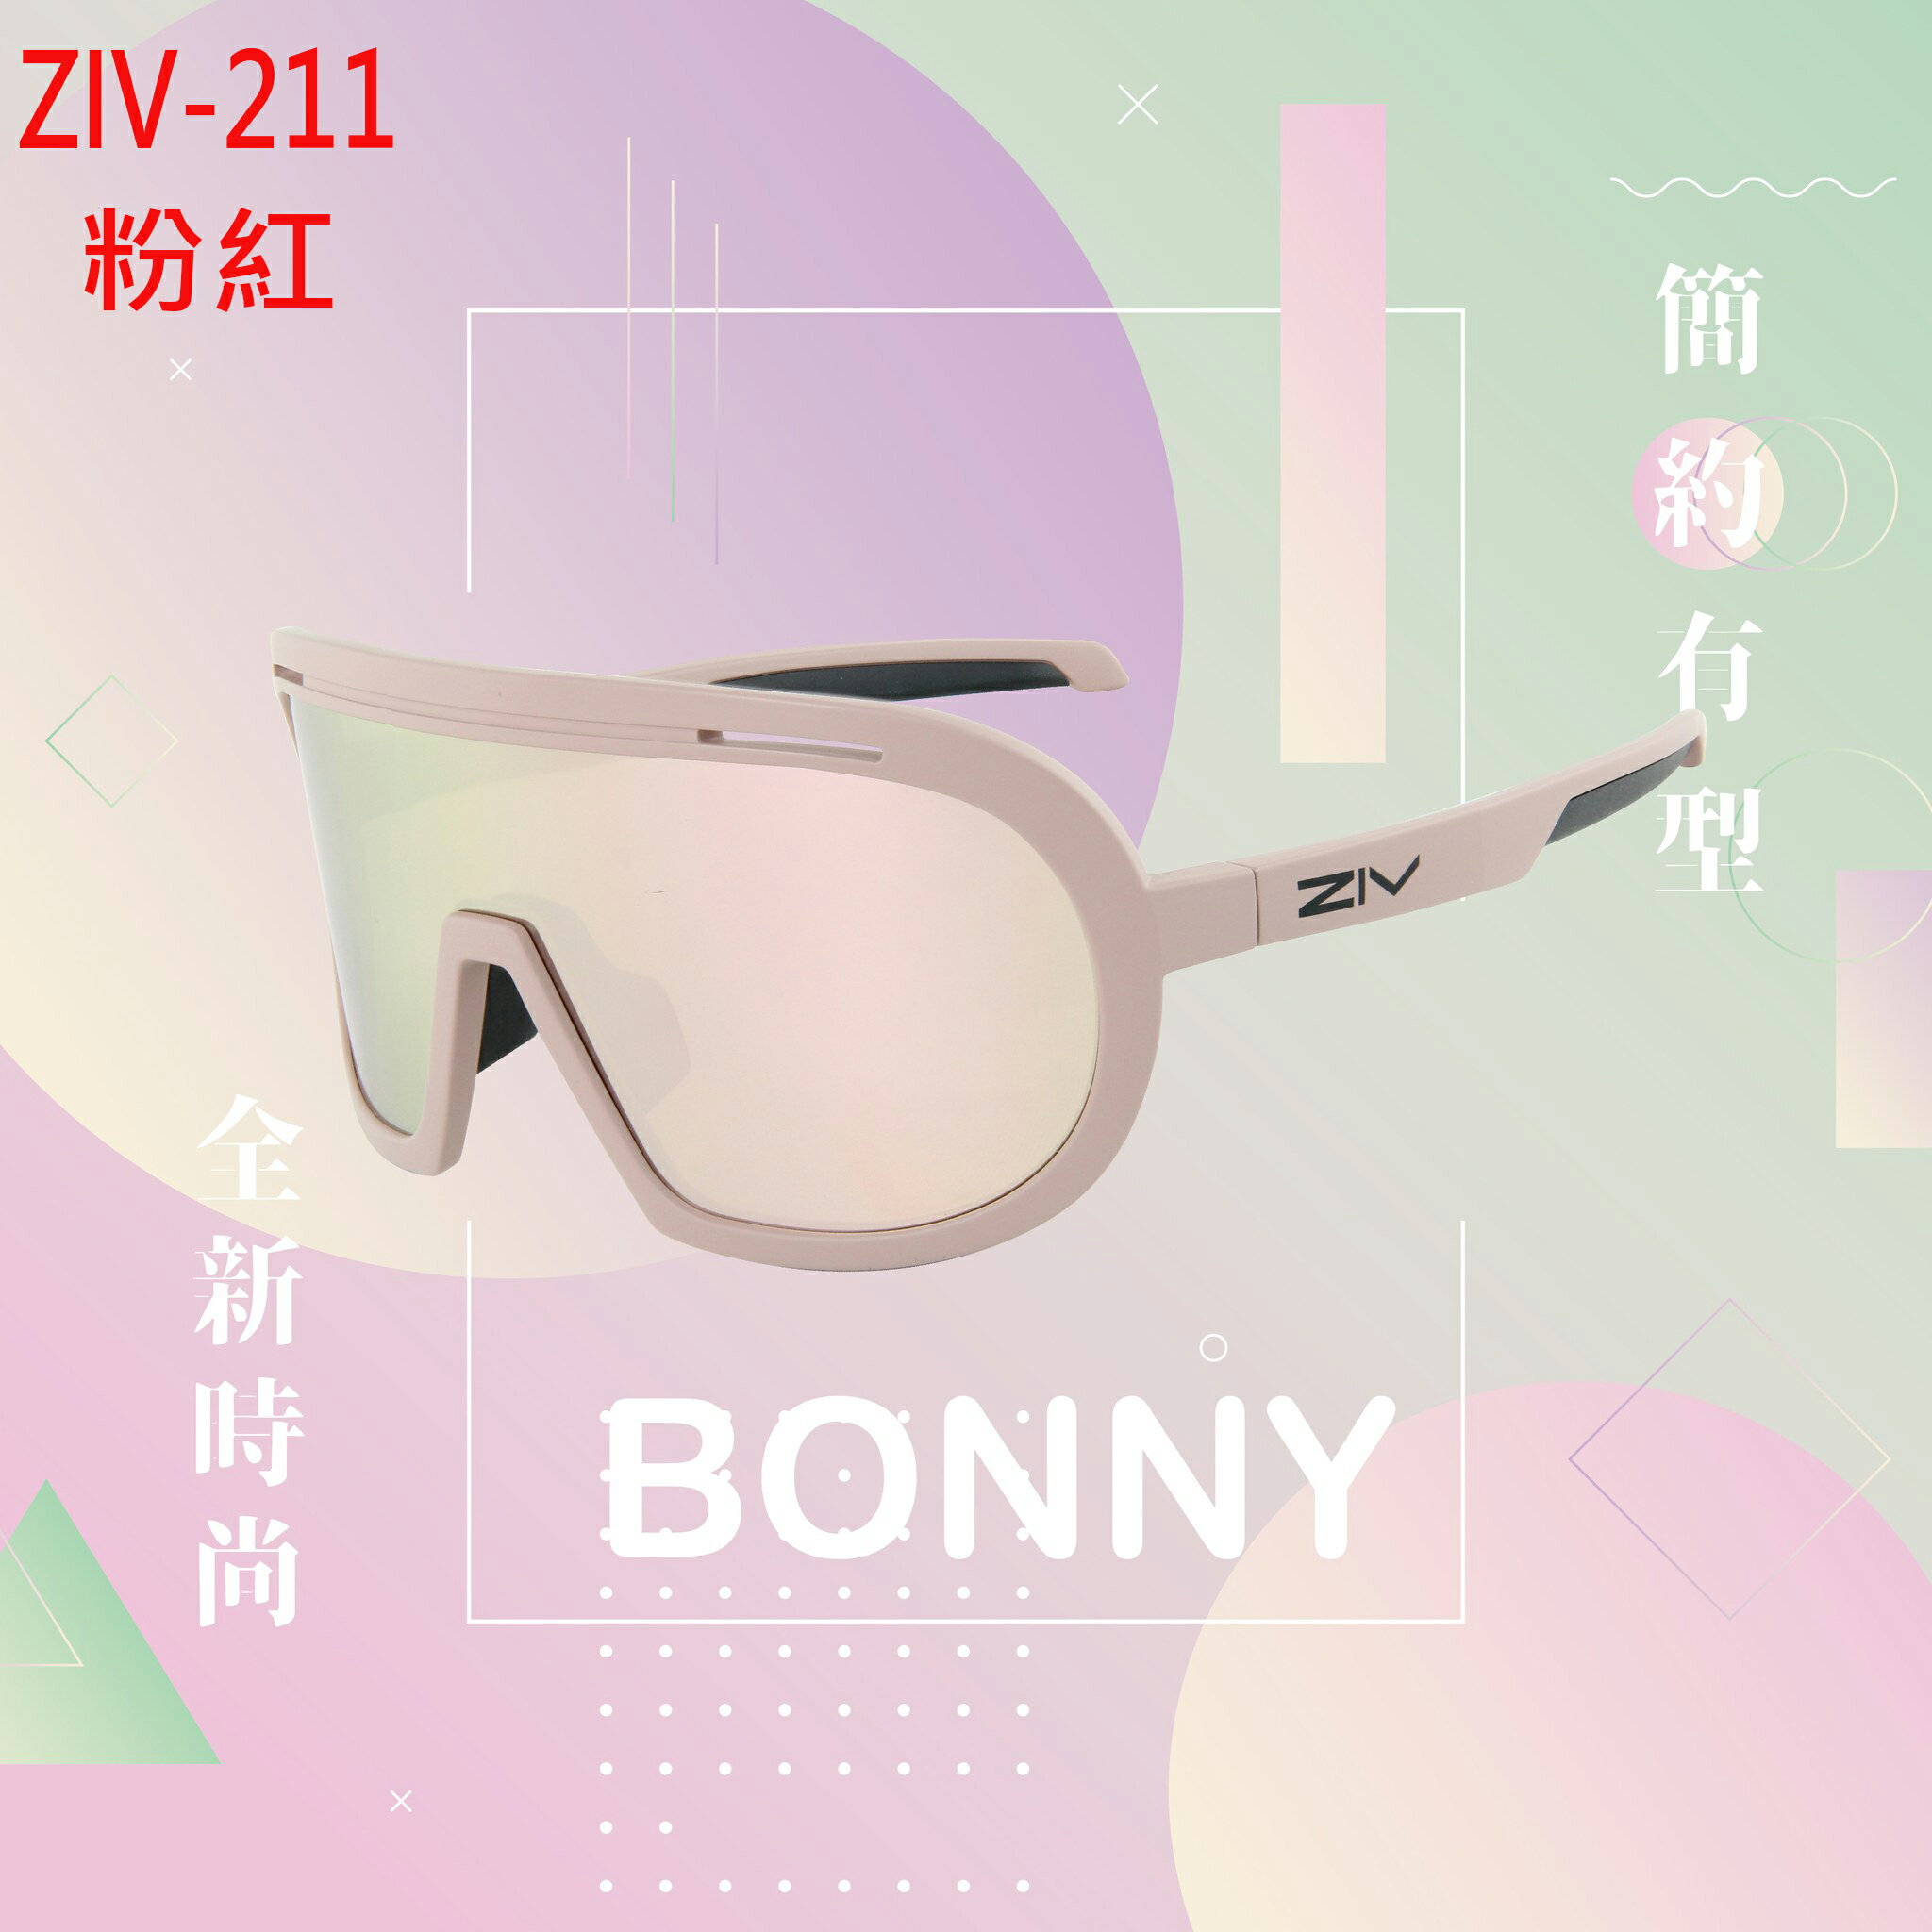 《台南悠活運動家》ZIV BONNY 風鏡系列 抗UV400、防油汙、防撞PC灰片電冰藍多層鍍膜 太陽眼鏡